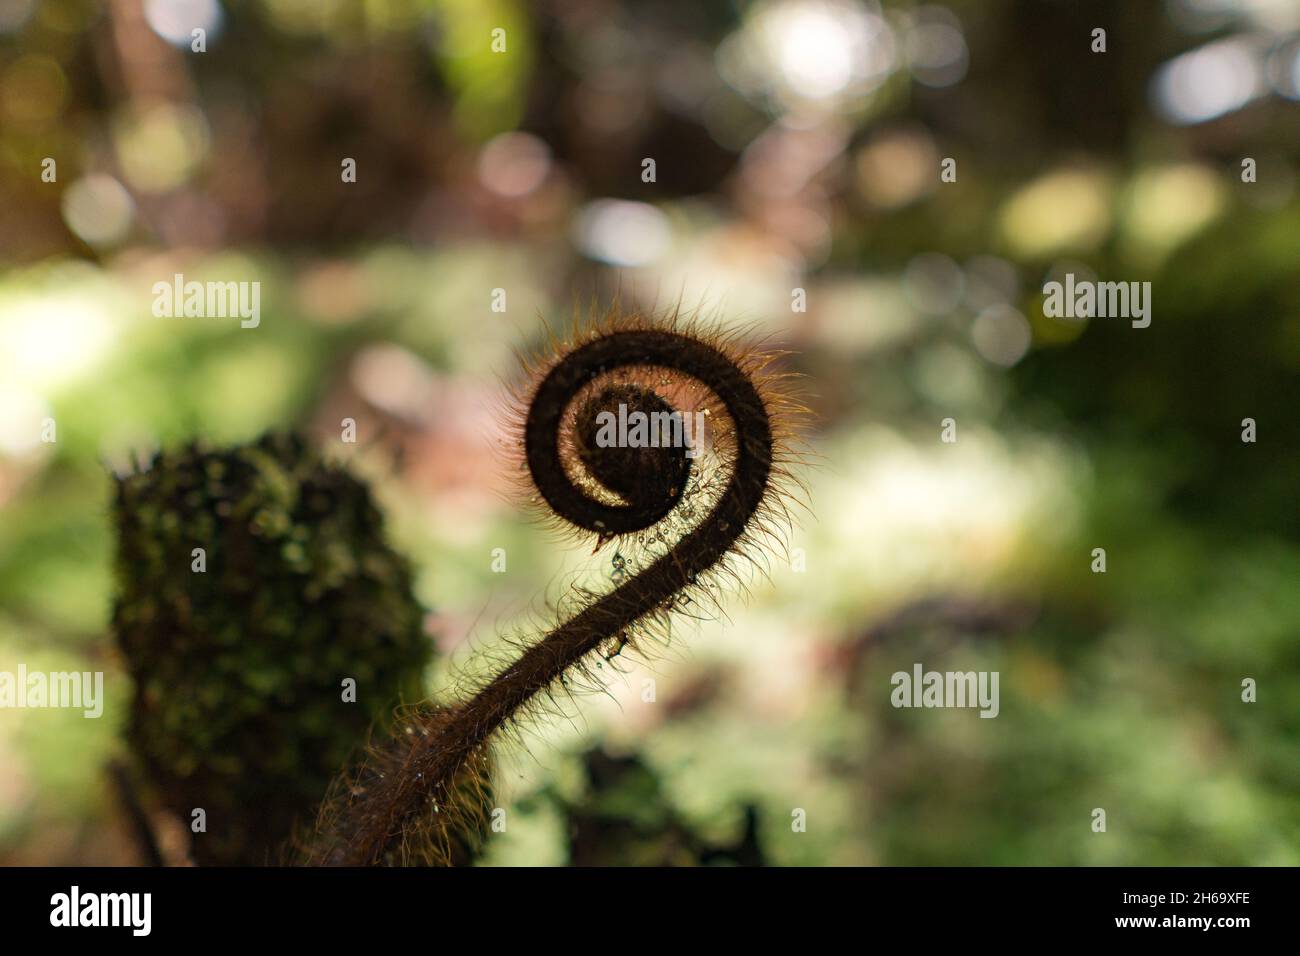 Close up of a New Zealand fern (Koru) Stock Photo